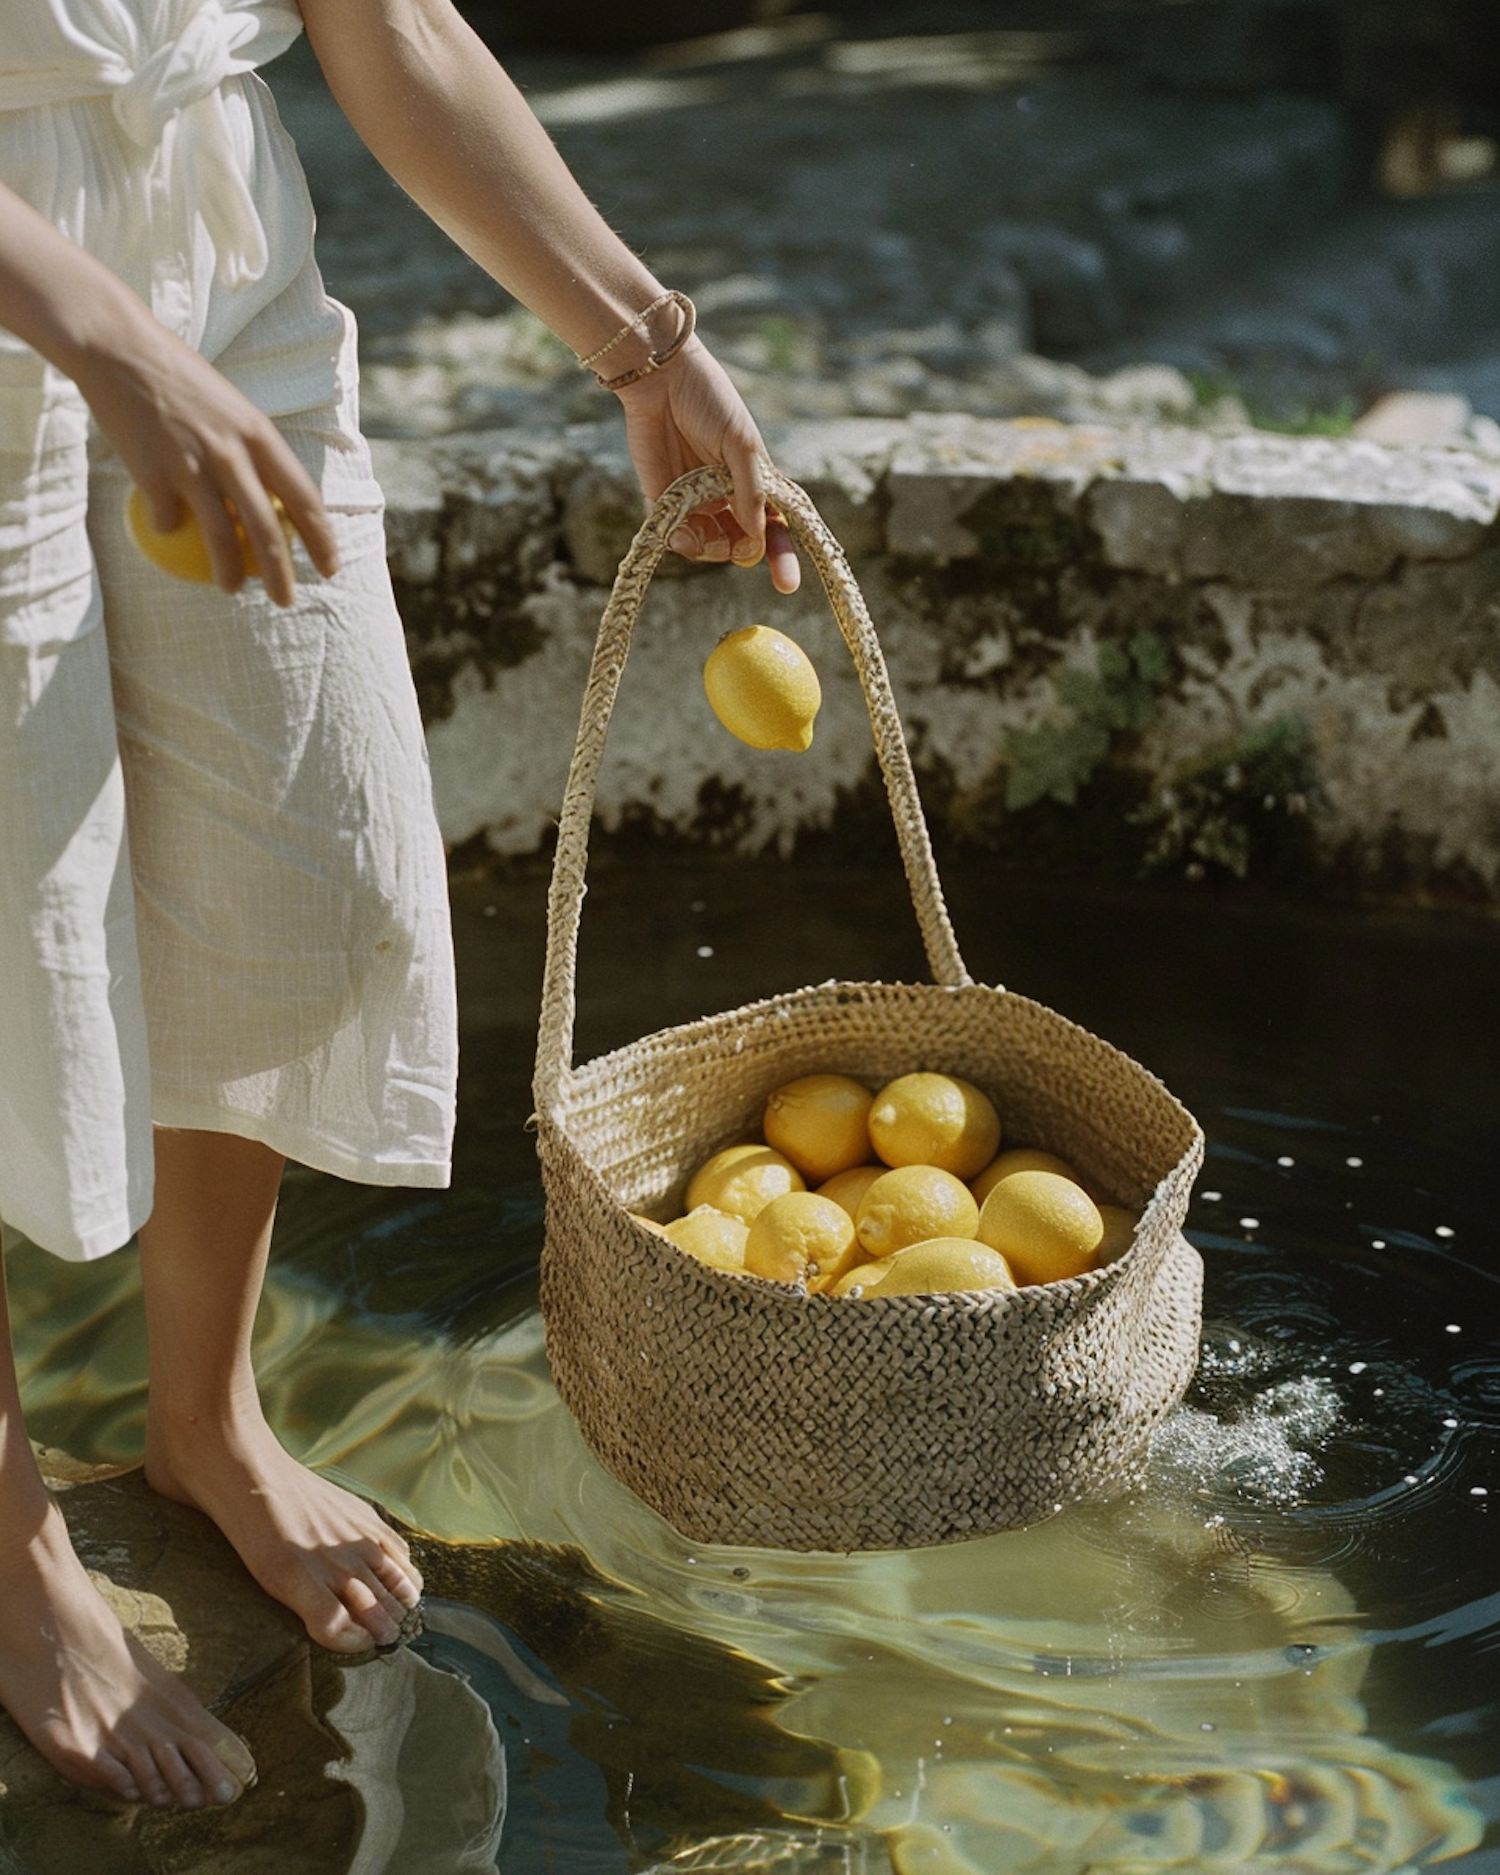 Rustic Elegance: Woman Placing Lemons in Basket